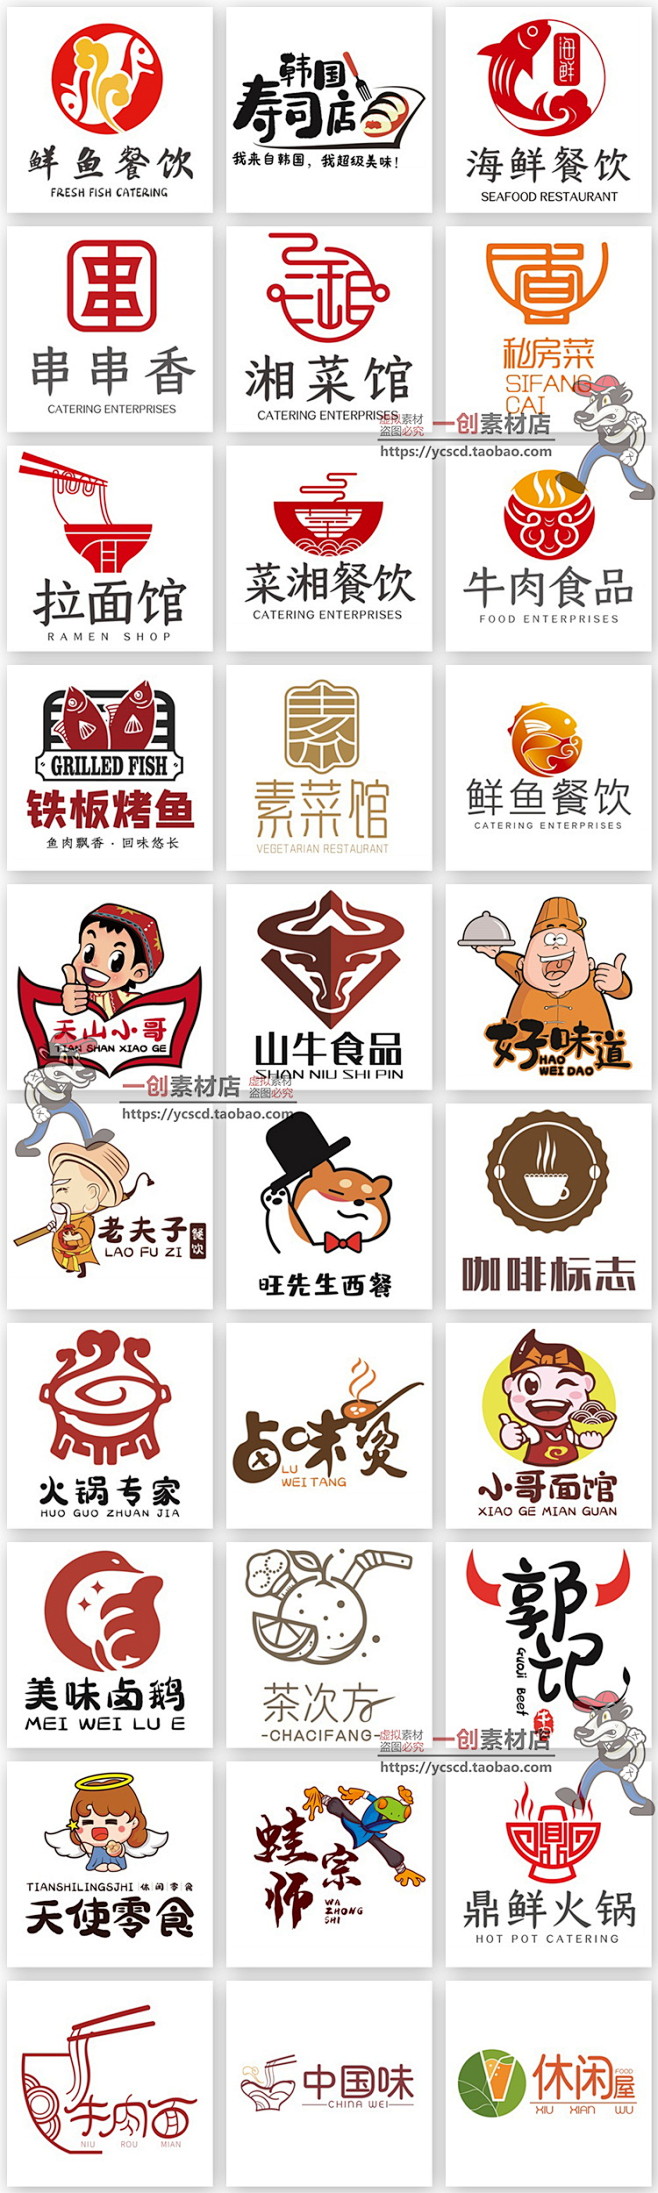 54快餐咖啡小面龙虾火锅餐饮公司品牌标志...